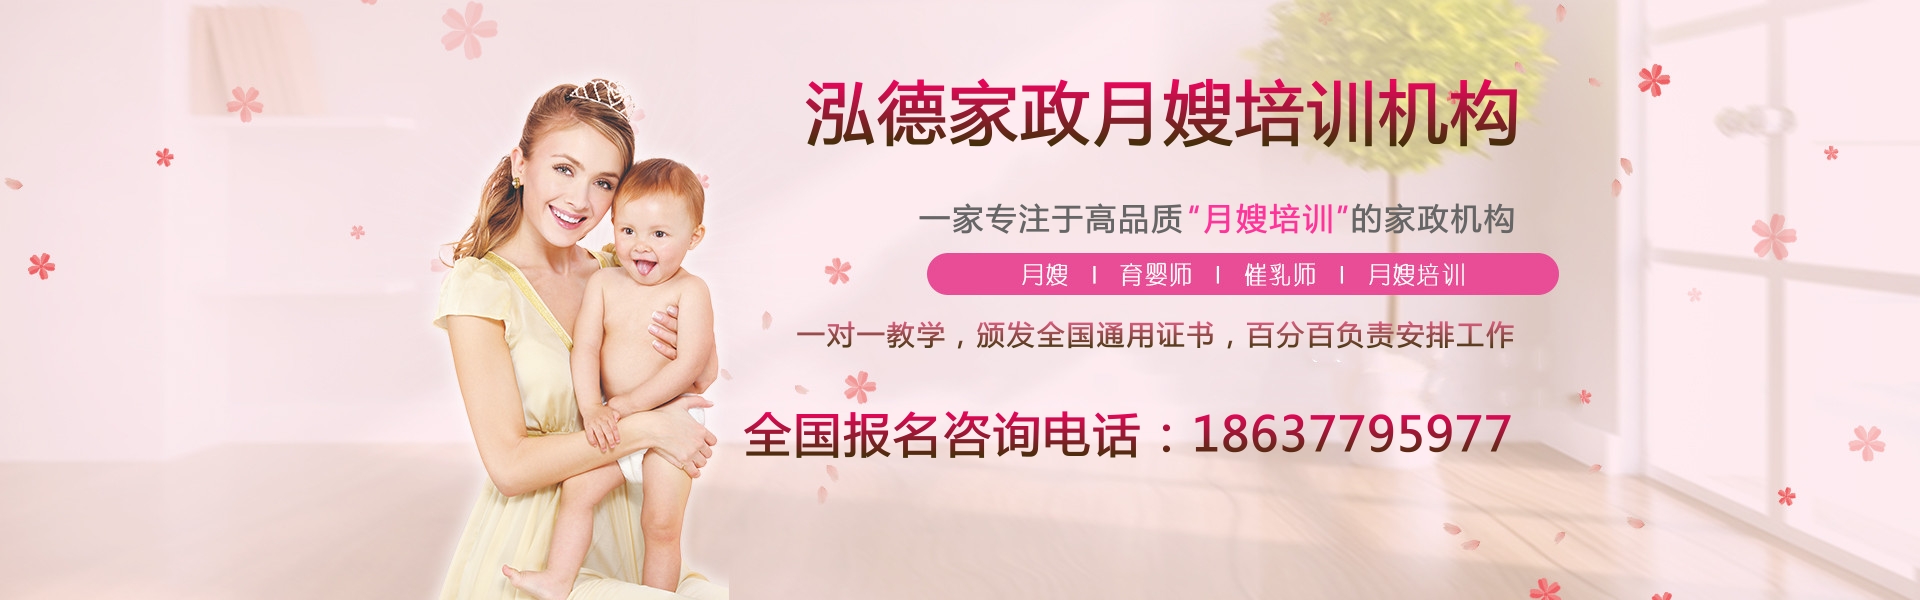 南阳新区月嫂公司给您提供高品质的母婴护理服务！